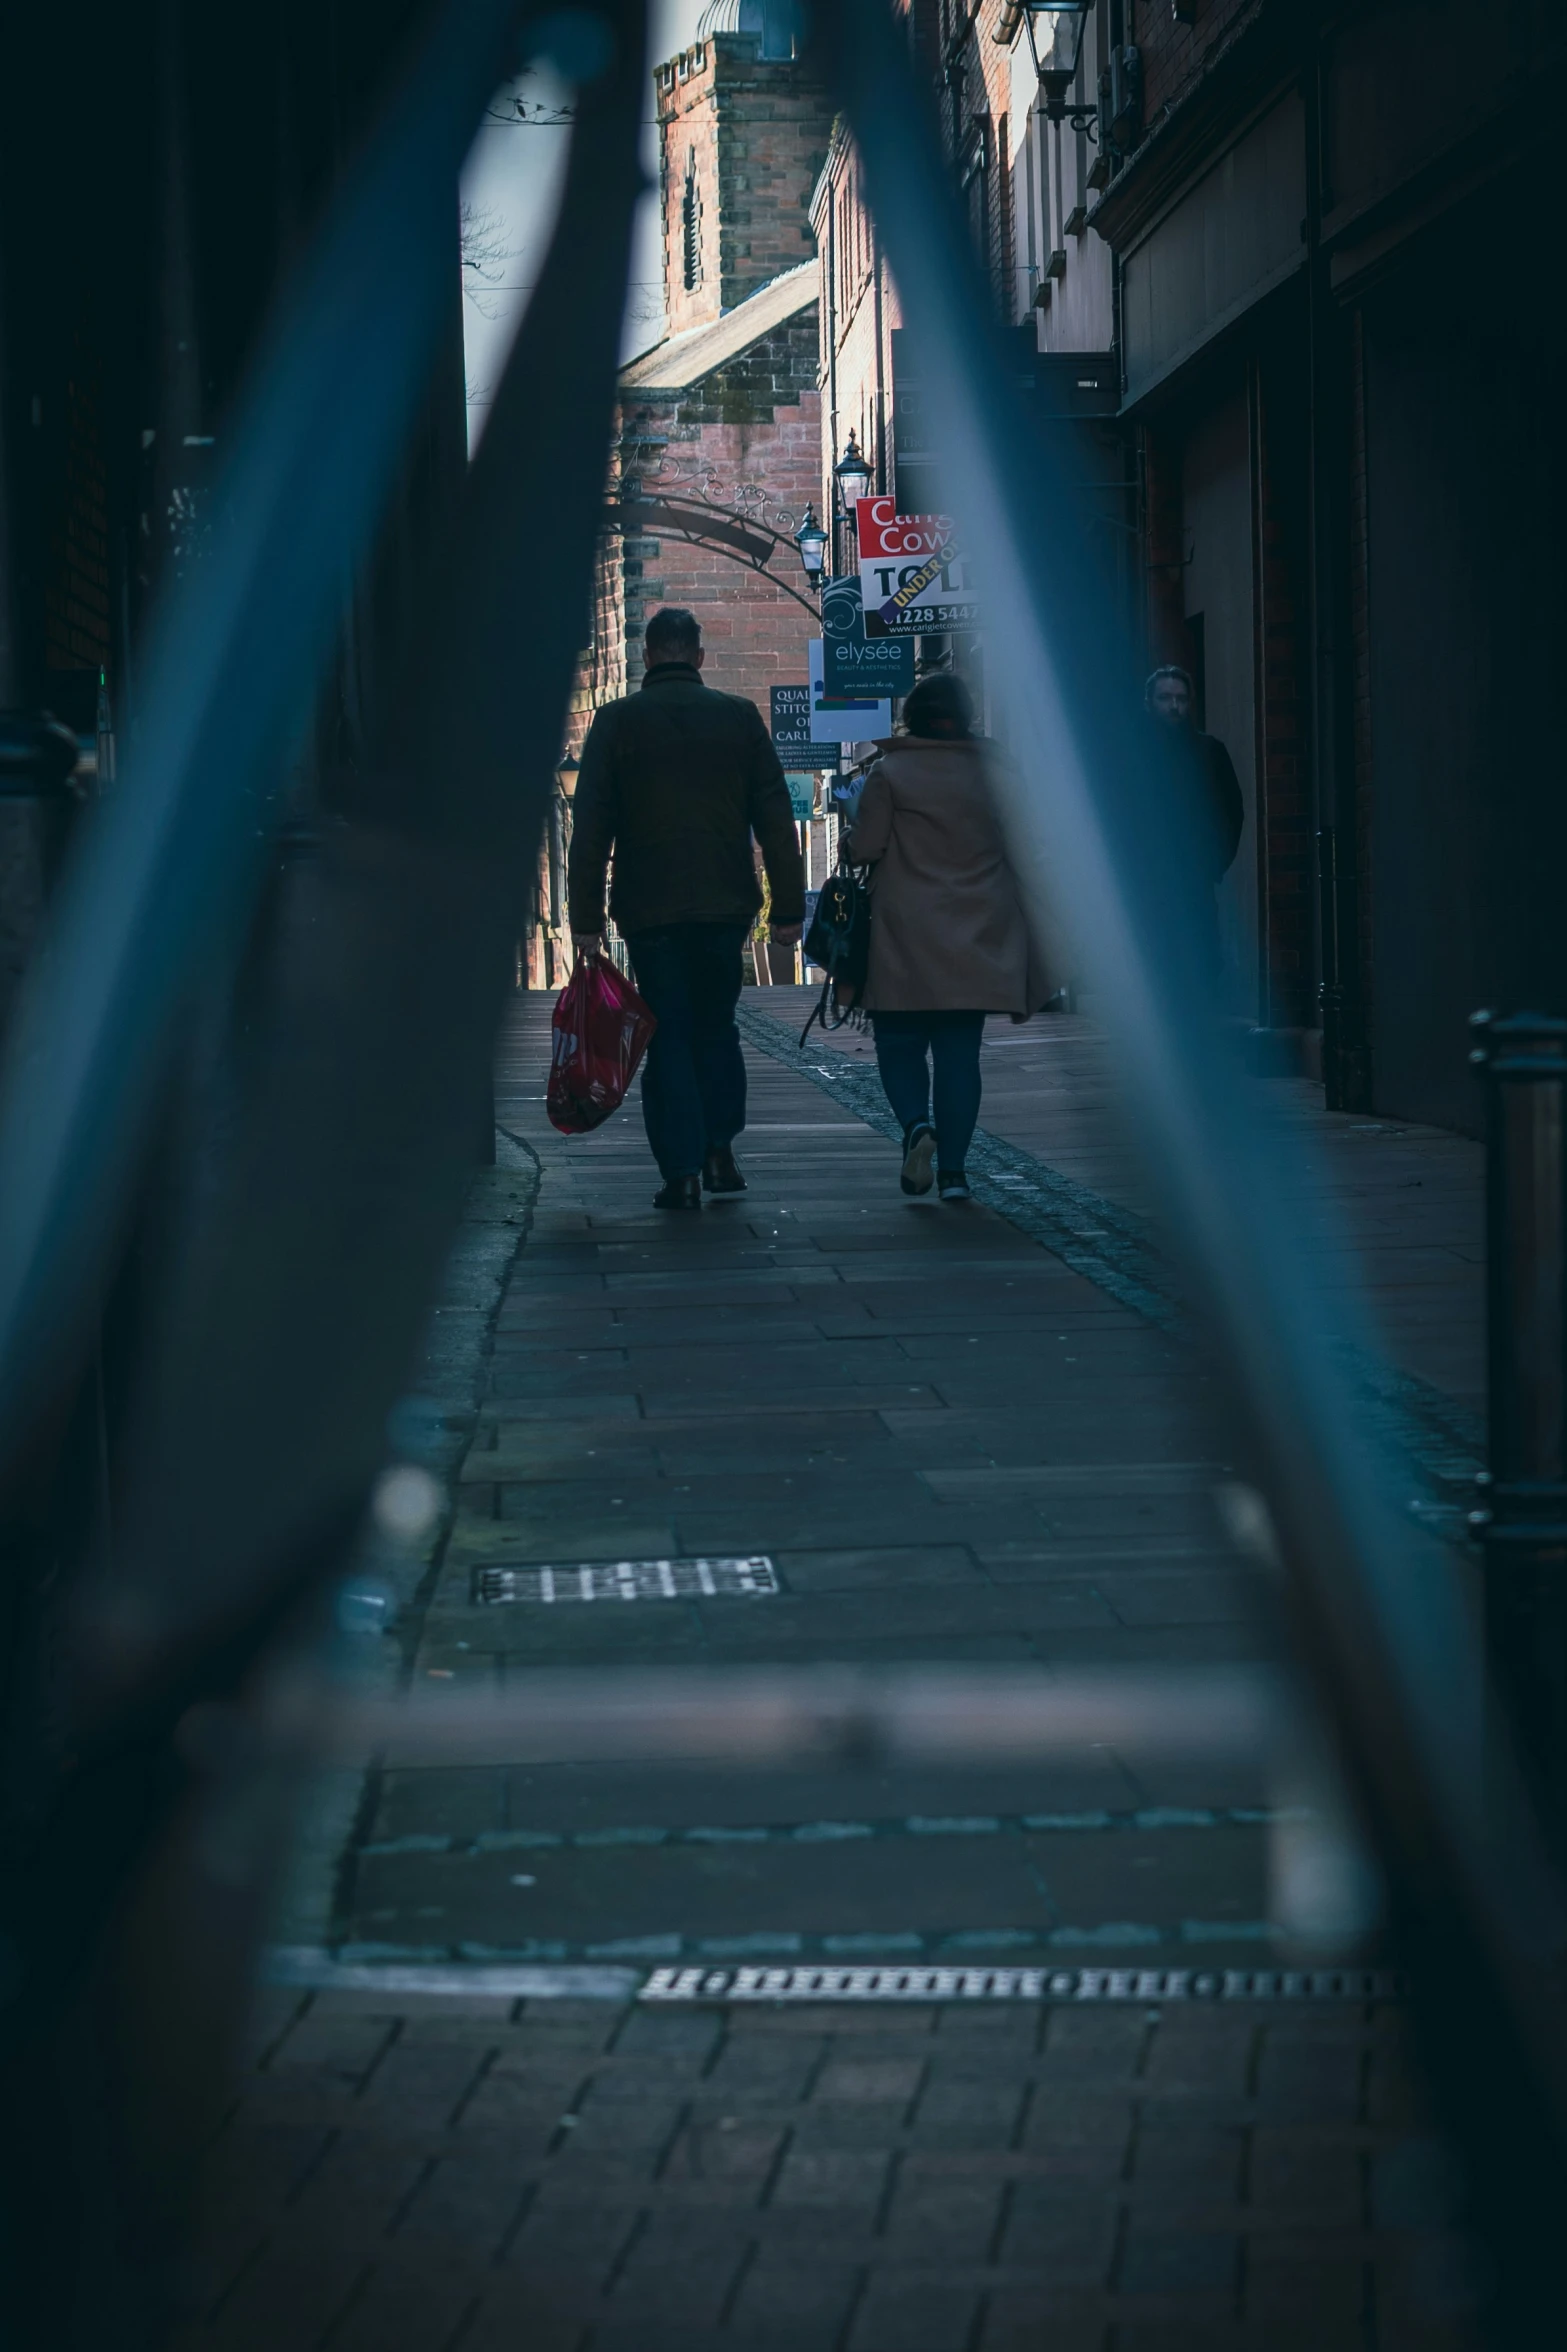 people walking down a sidewalk on a city street